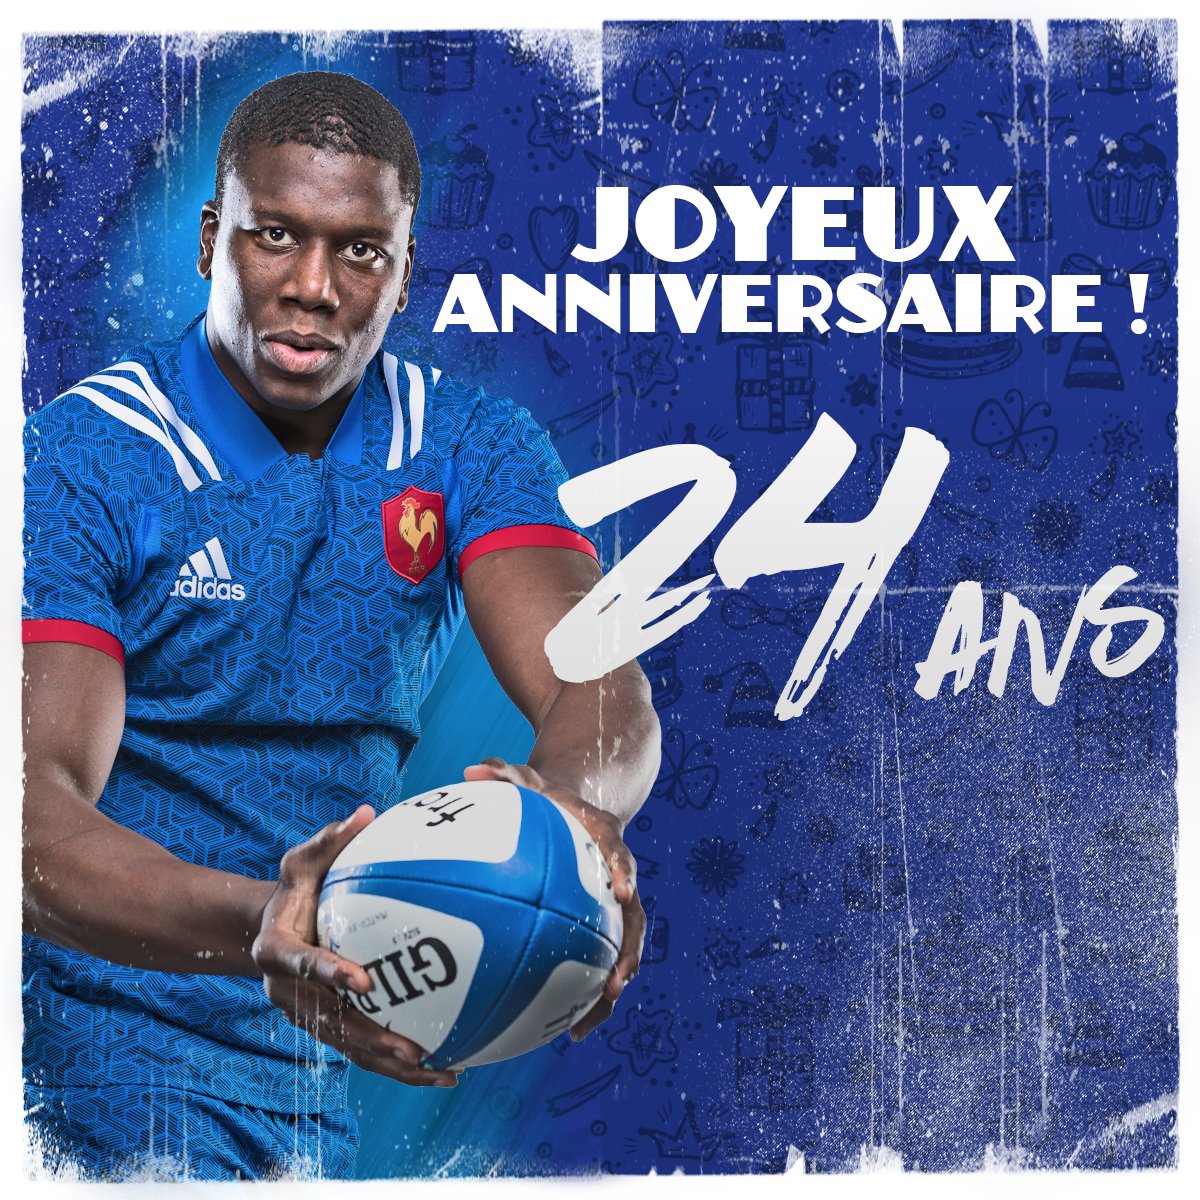 France Rugby Il Fete Ses 2 4 Ans Aujourd Hui Joyeux Anniversaire Yaccamara Soutienslexv